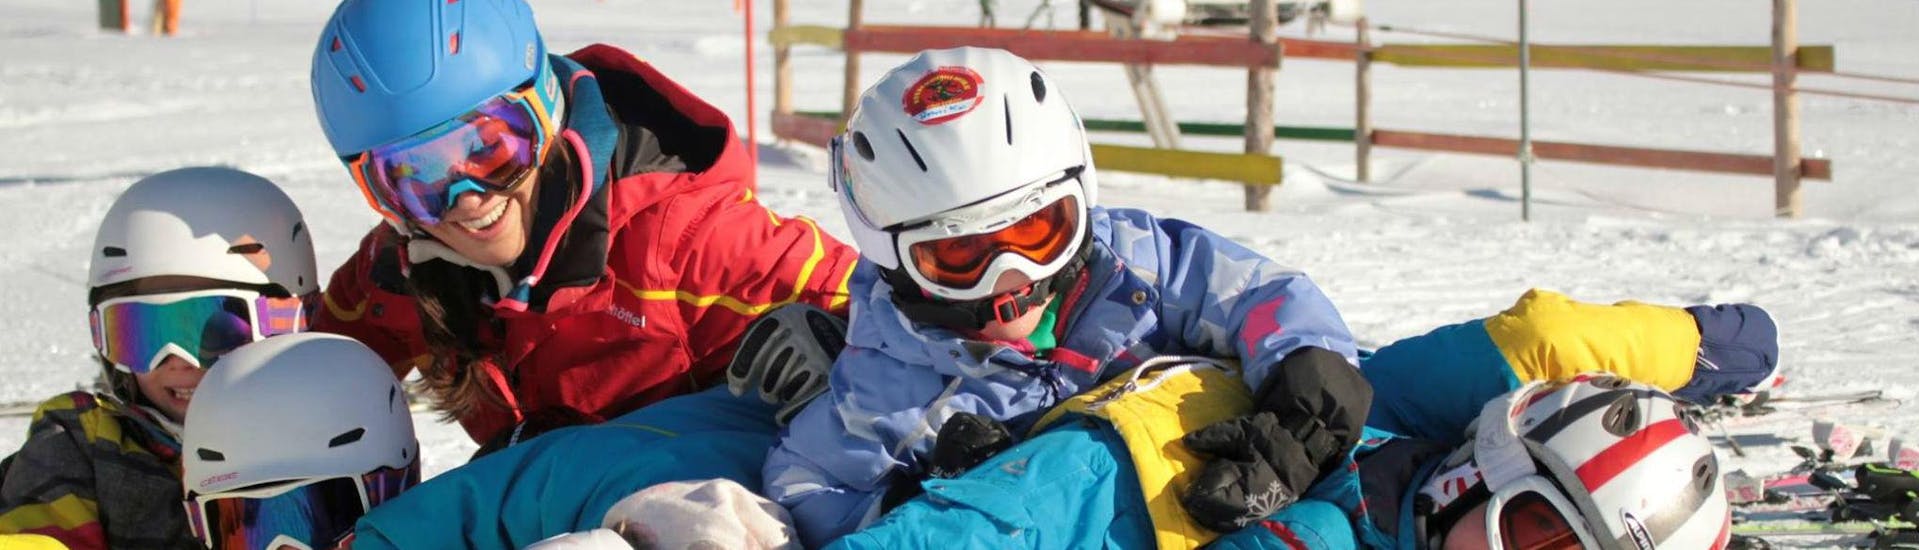 Lezioni di sci per bambini a partire da 3 anni per avanzati.